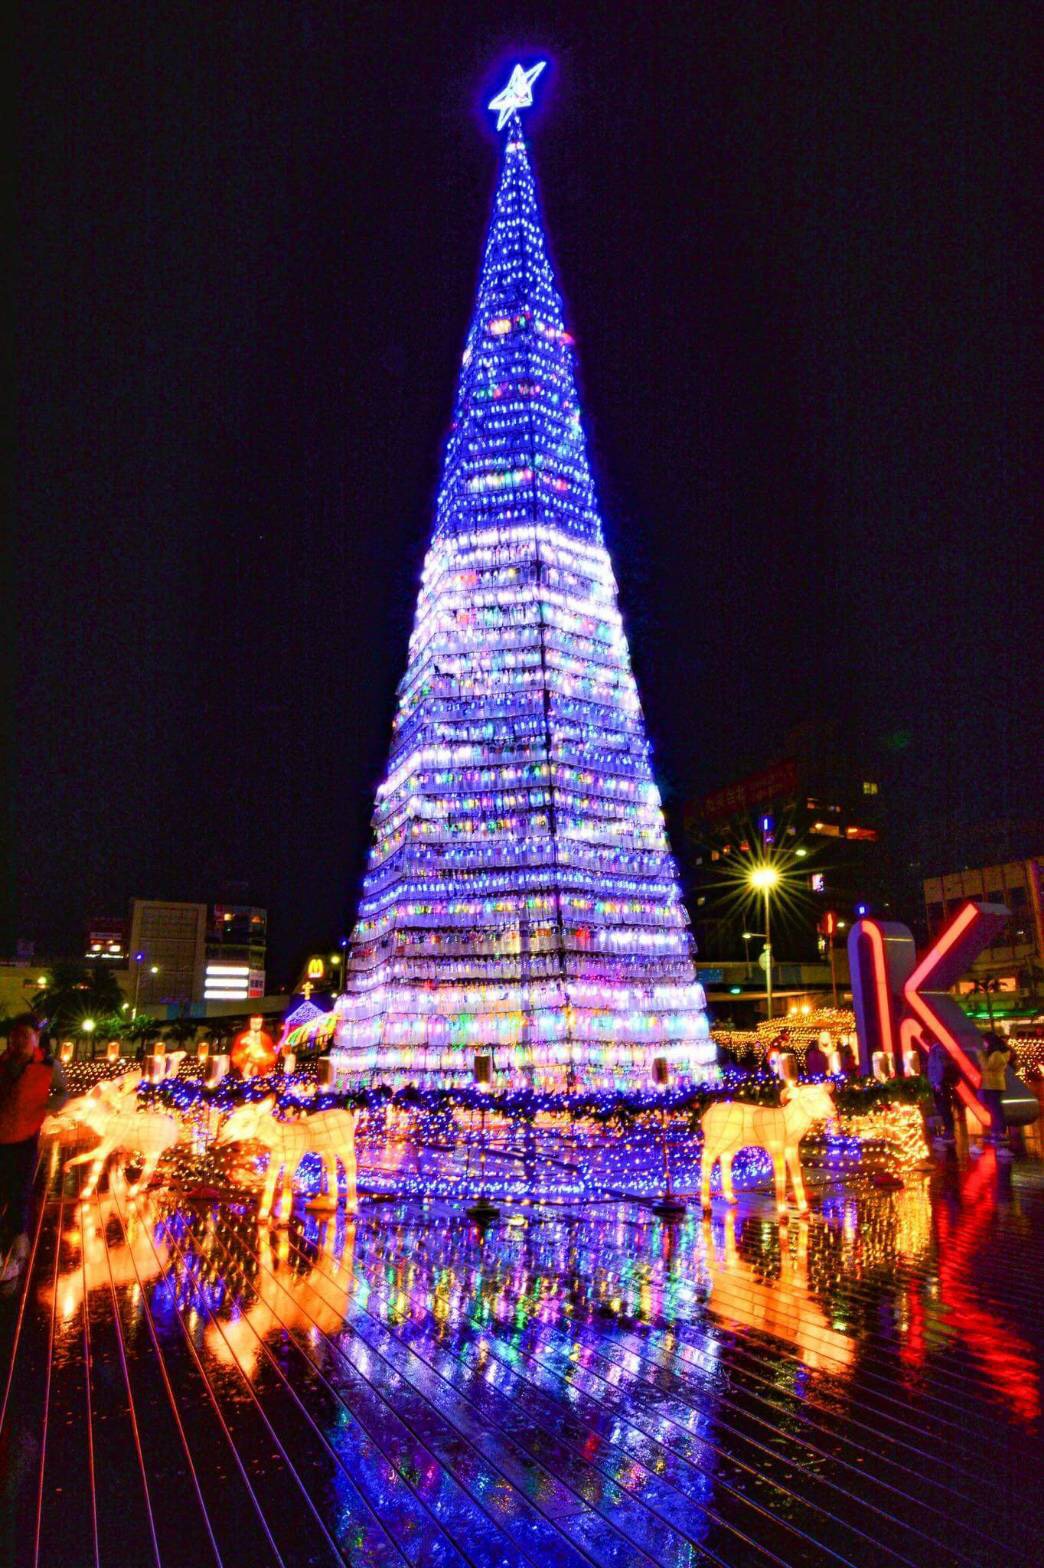 整个基隆海洋广场充满圣诞节气氛。(照片提供/基隆市基督教联合关怀协会)